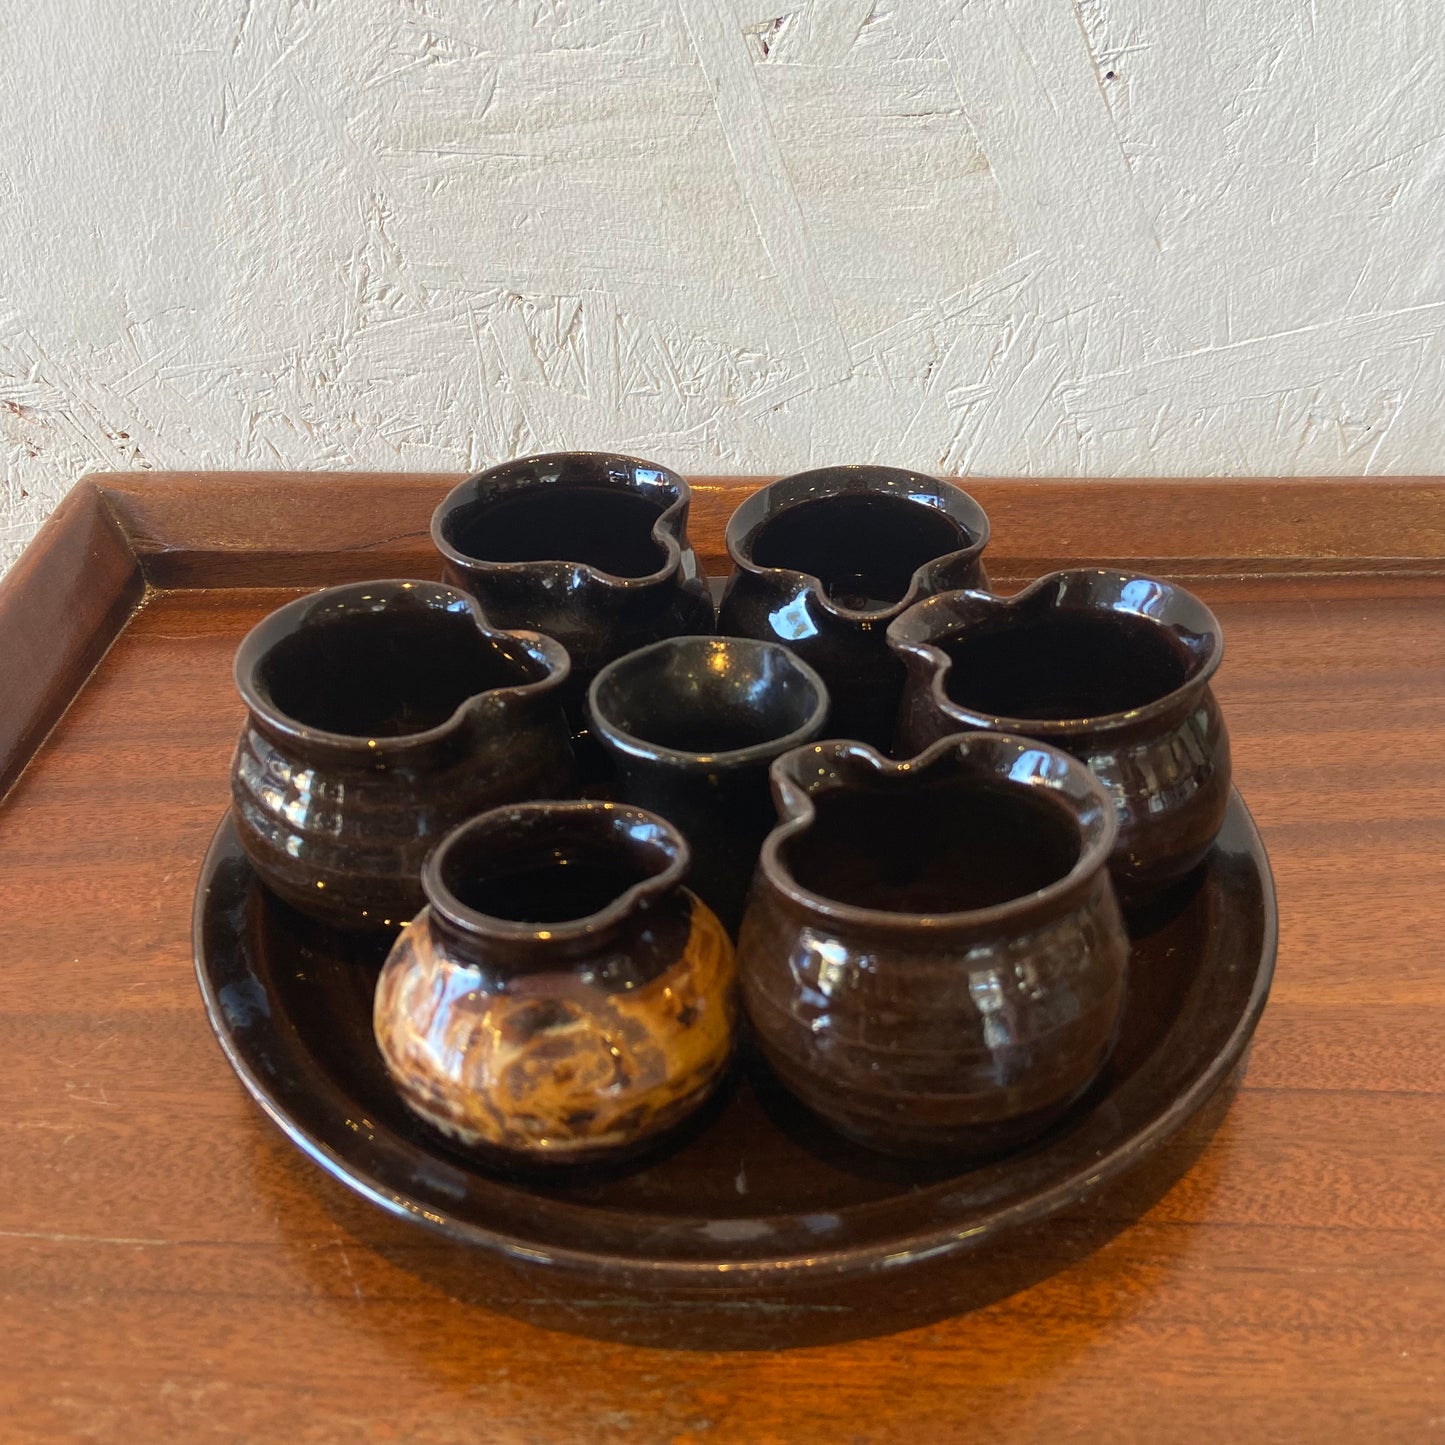 Alvingham Pottery Sauce Set